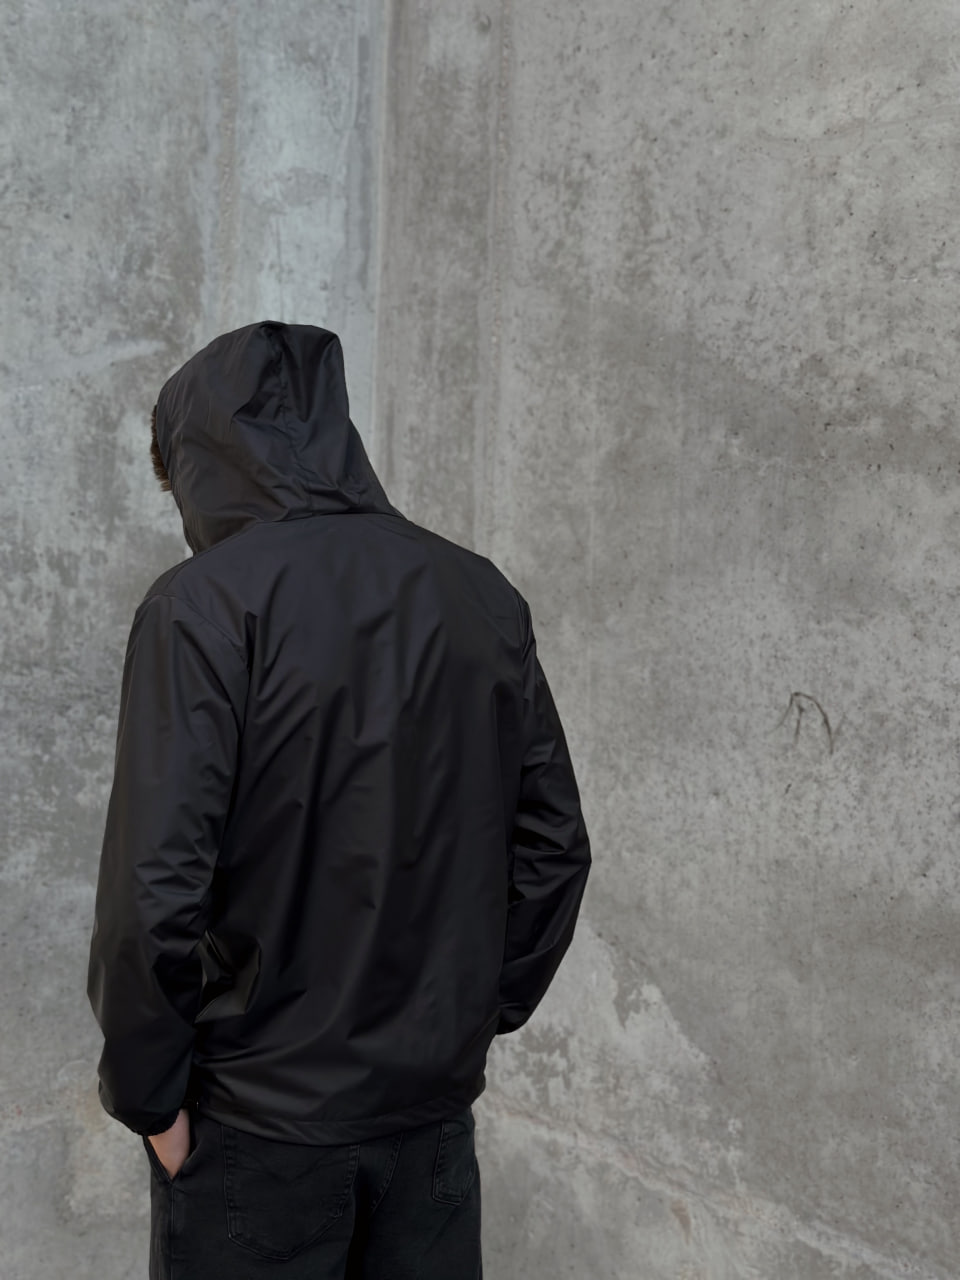 Мужская демисезонная куртка - ветровка Reload Basic чёрная - Фото 6